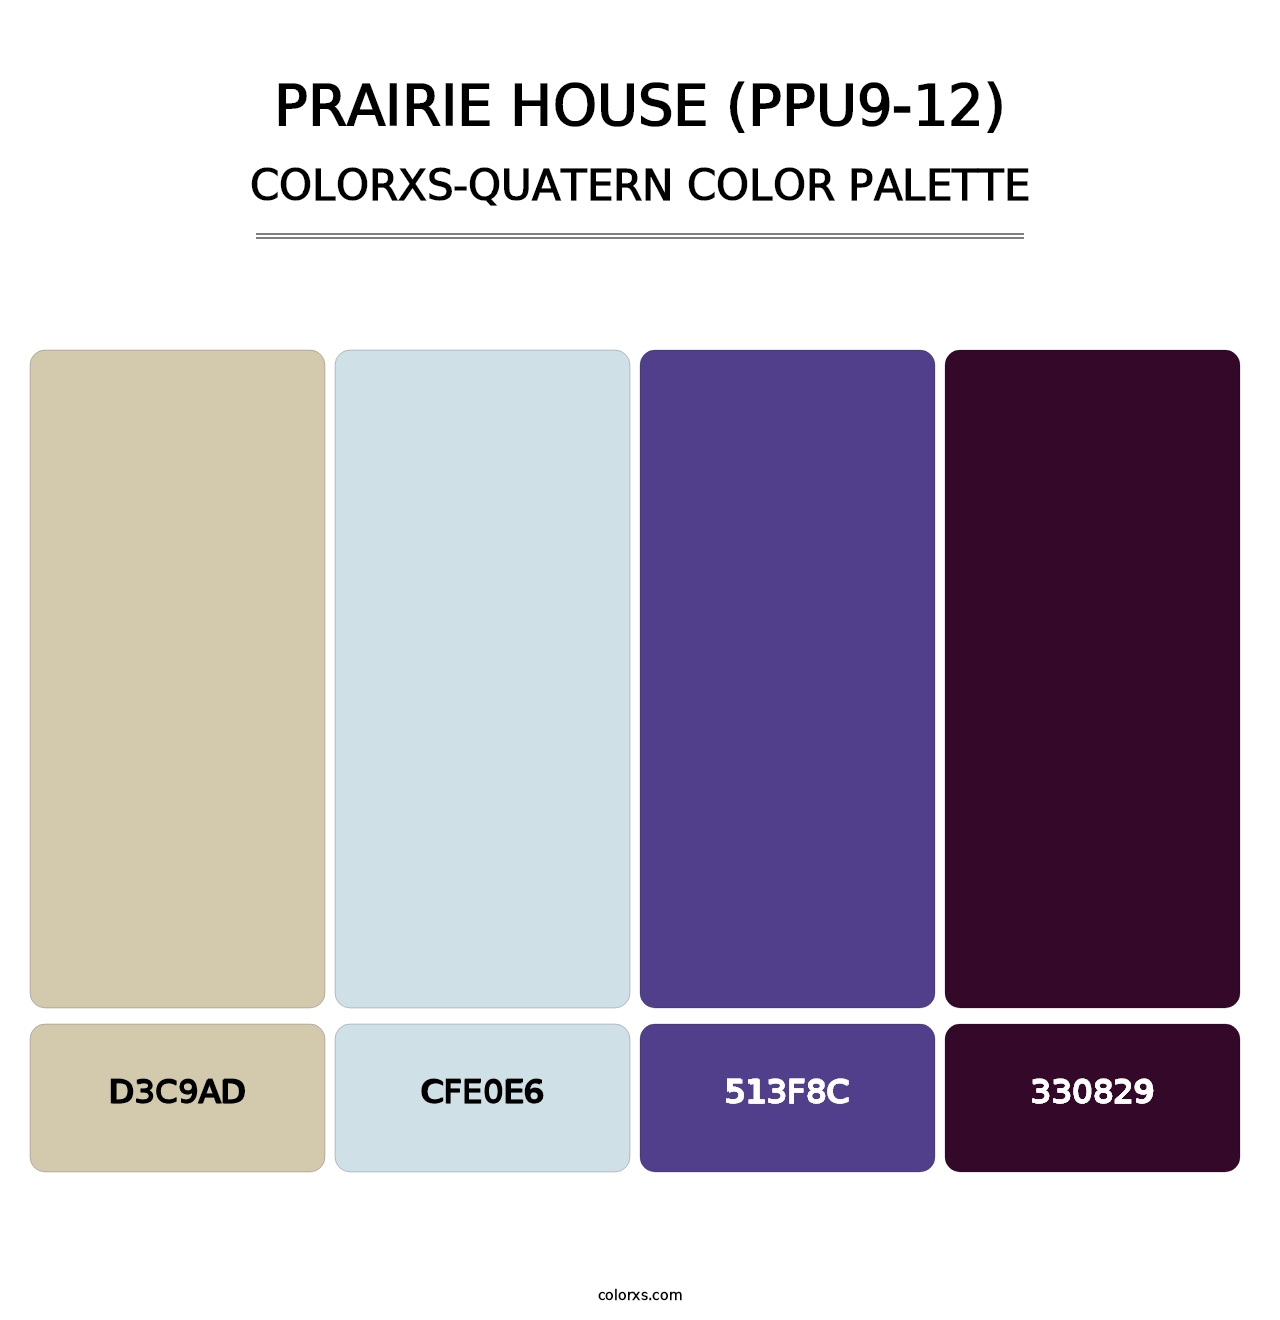 Prairie House (PPU9-12) - Colorxs Quatern Palette